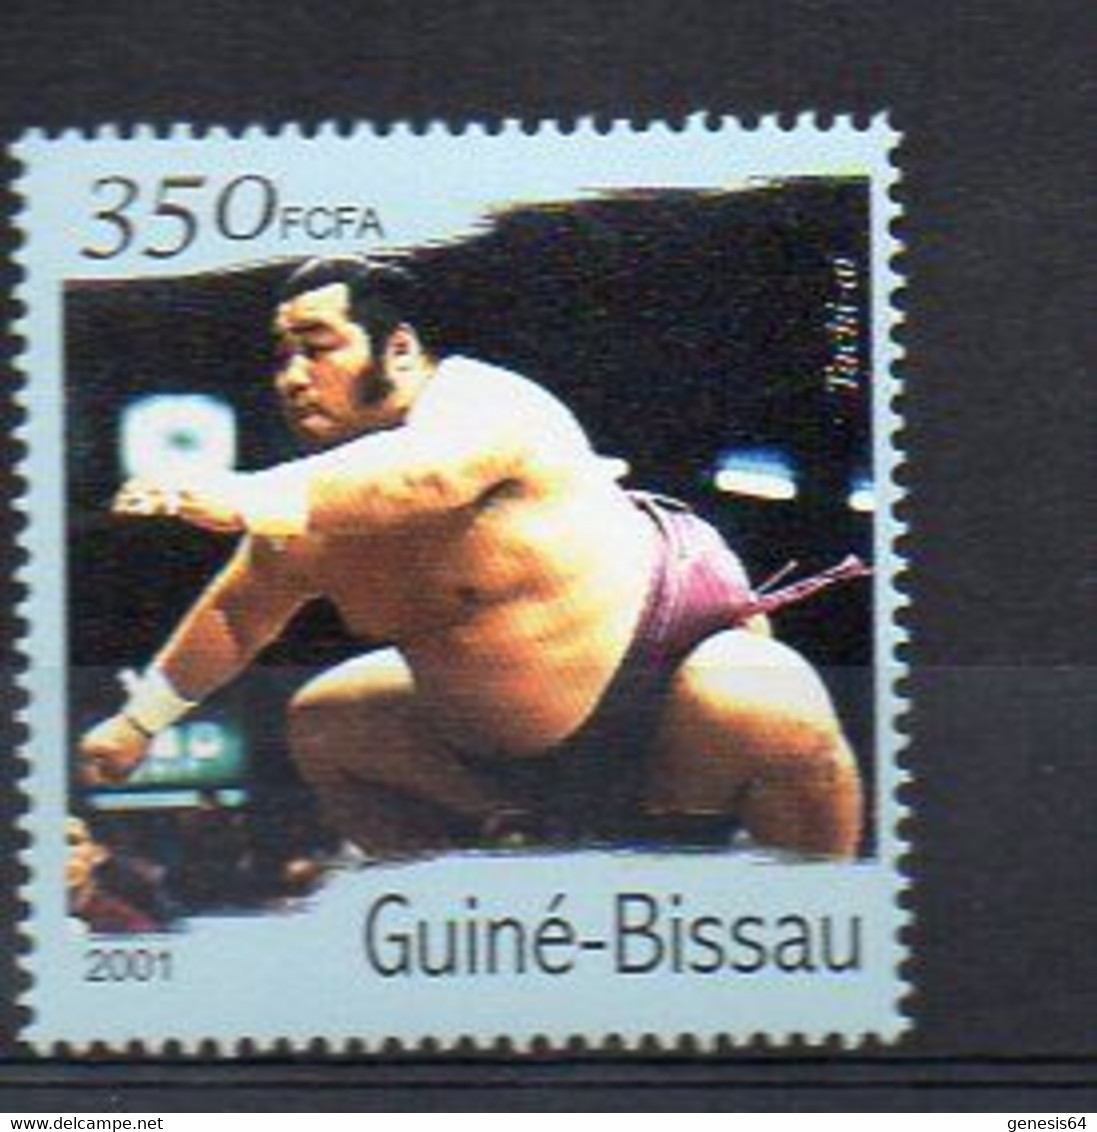 Sumo - (Guinea Bissau) MNH (2W2984) - Non Classés